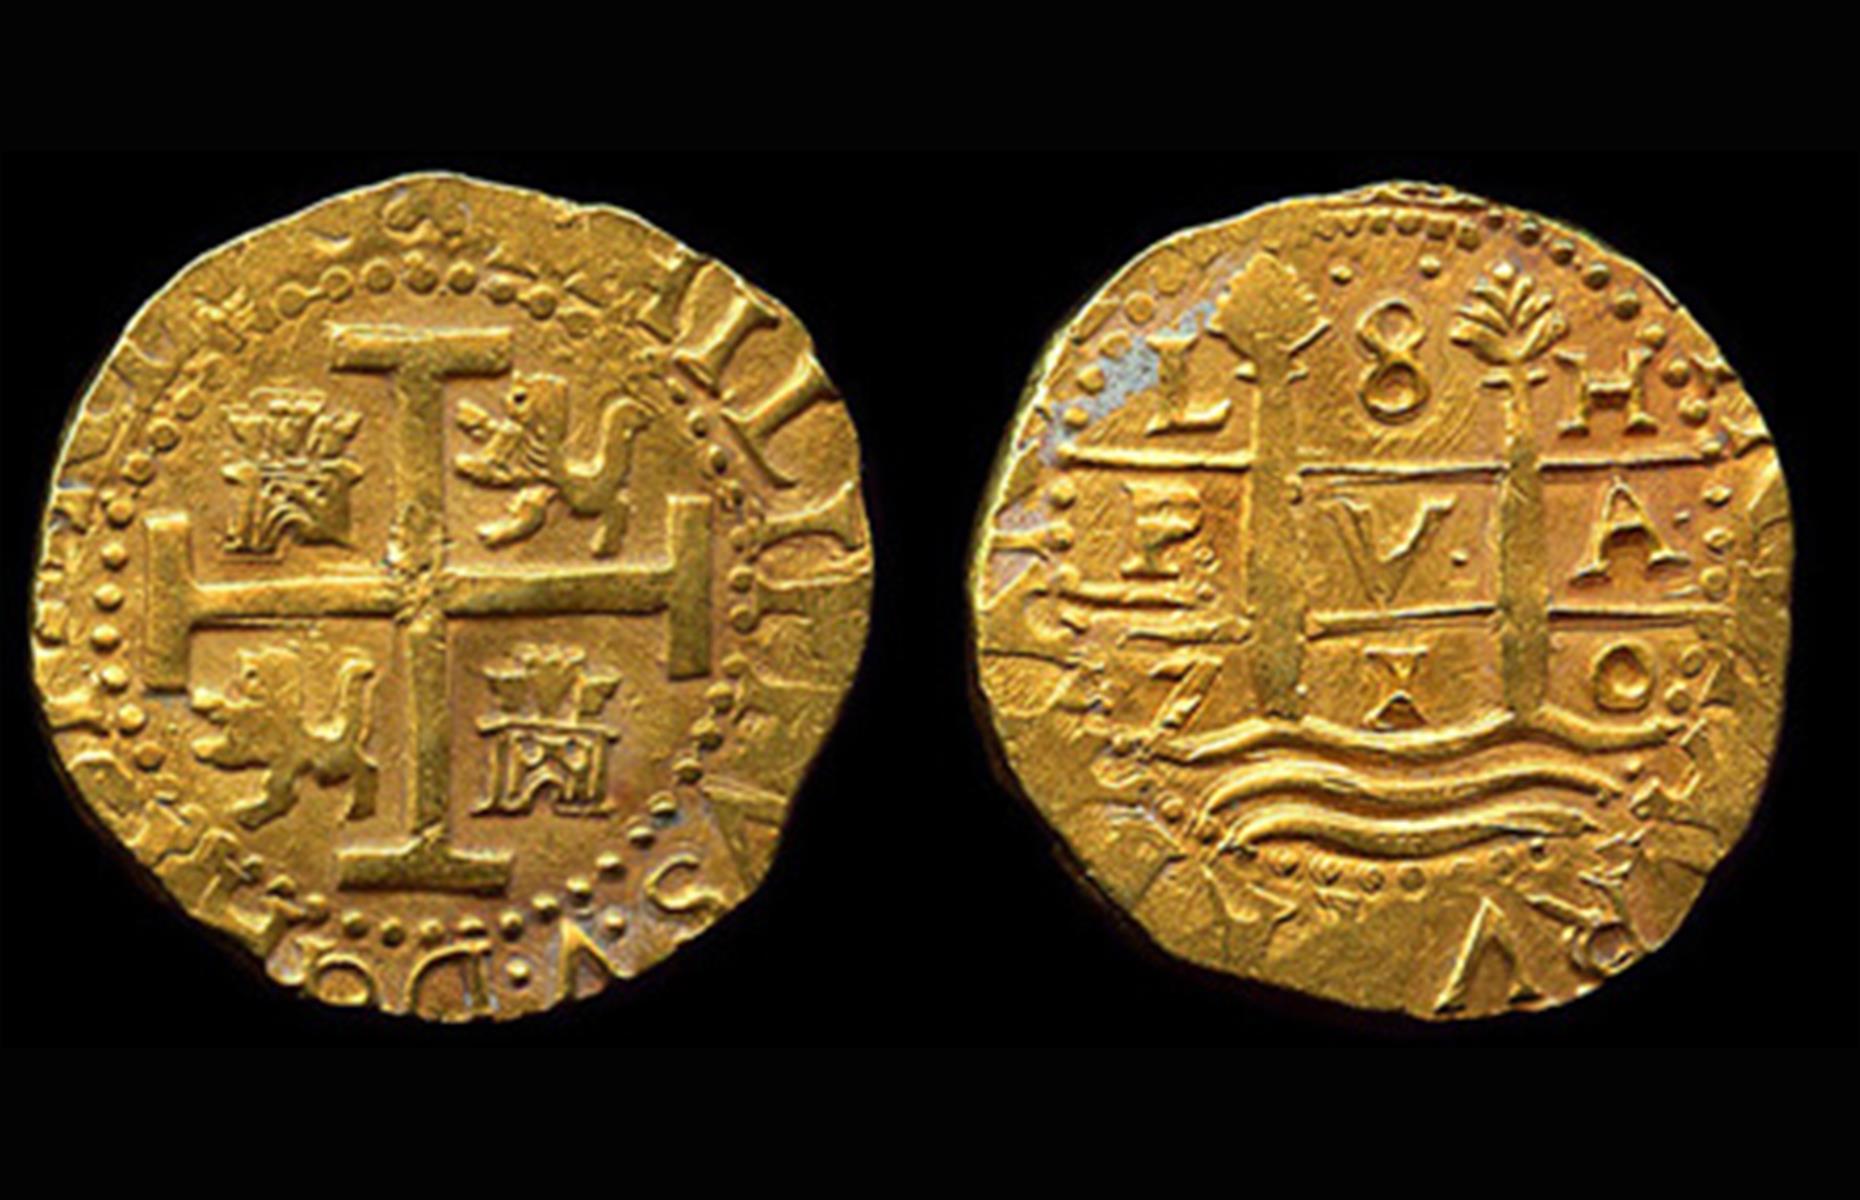 1715 Treasure Fleet coins – $5.8 million (£4.6m)